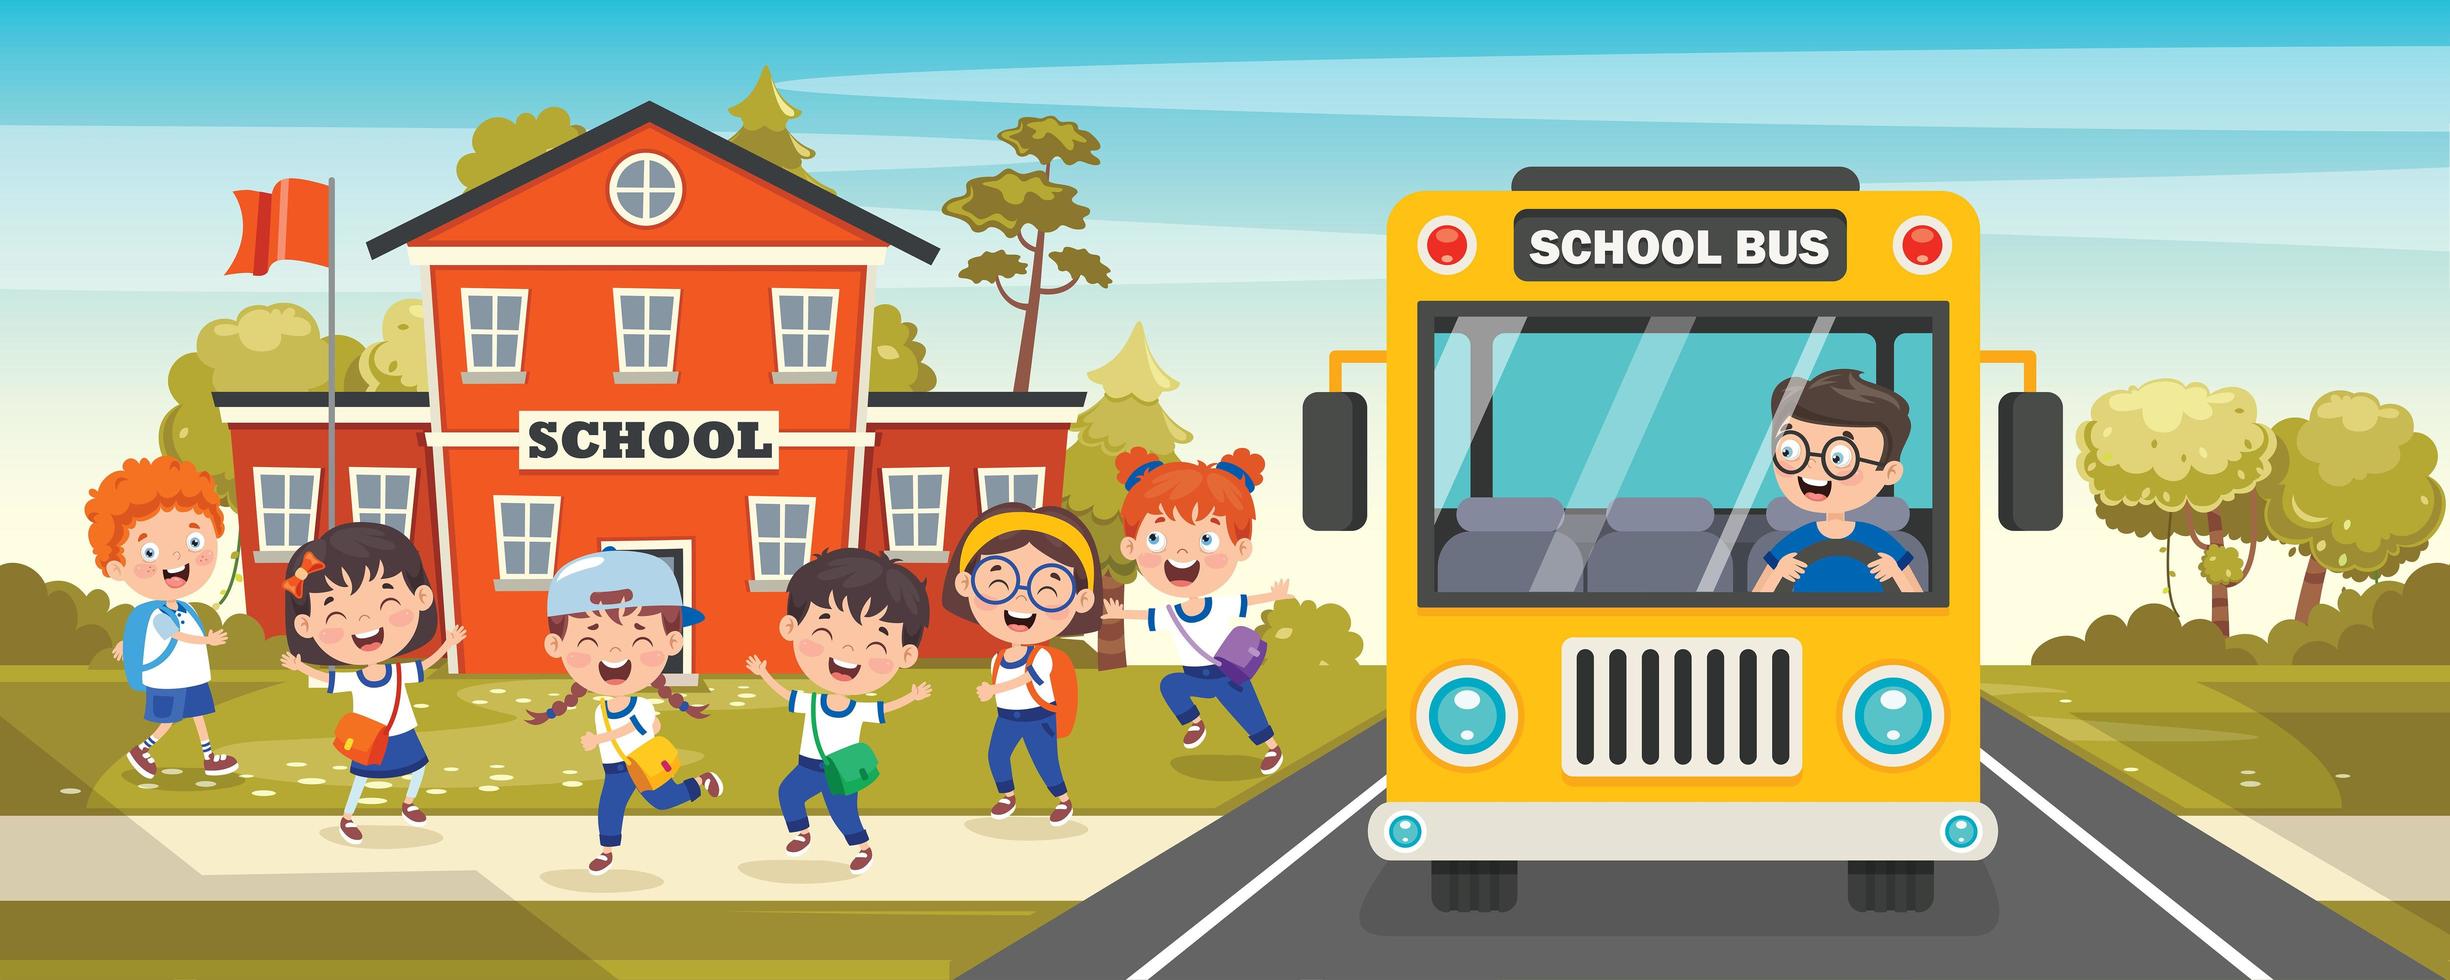 schoolbus voorkant met verlaten schoolkinderen vector